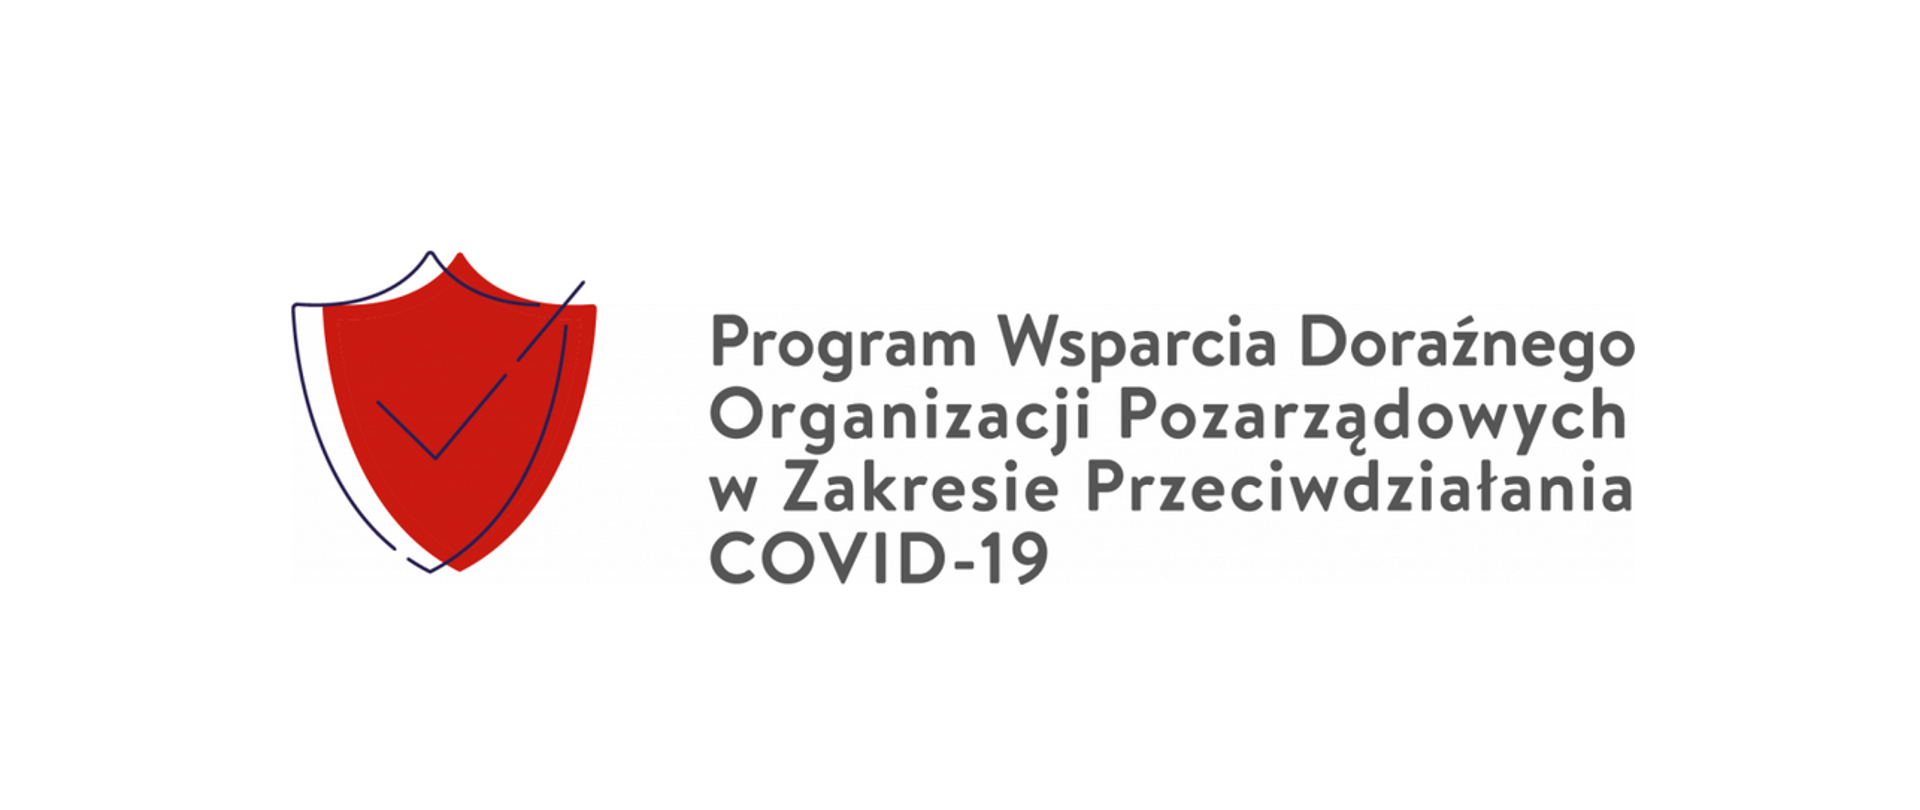 Program Wsparcia Doraźnego Organizacji Pozarządowych w Zakresie Przeciwdziałania COVID-19 - logo